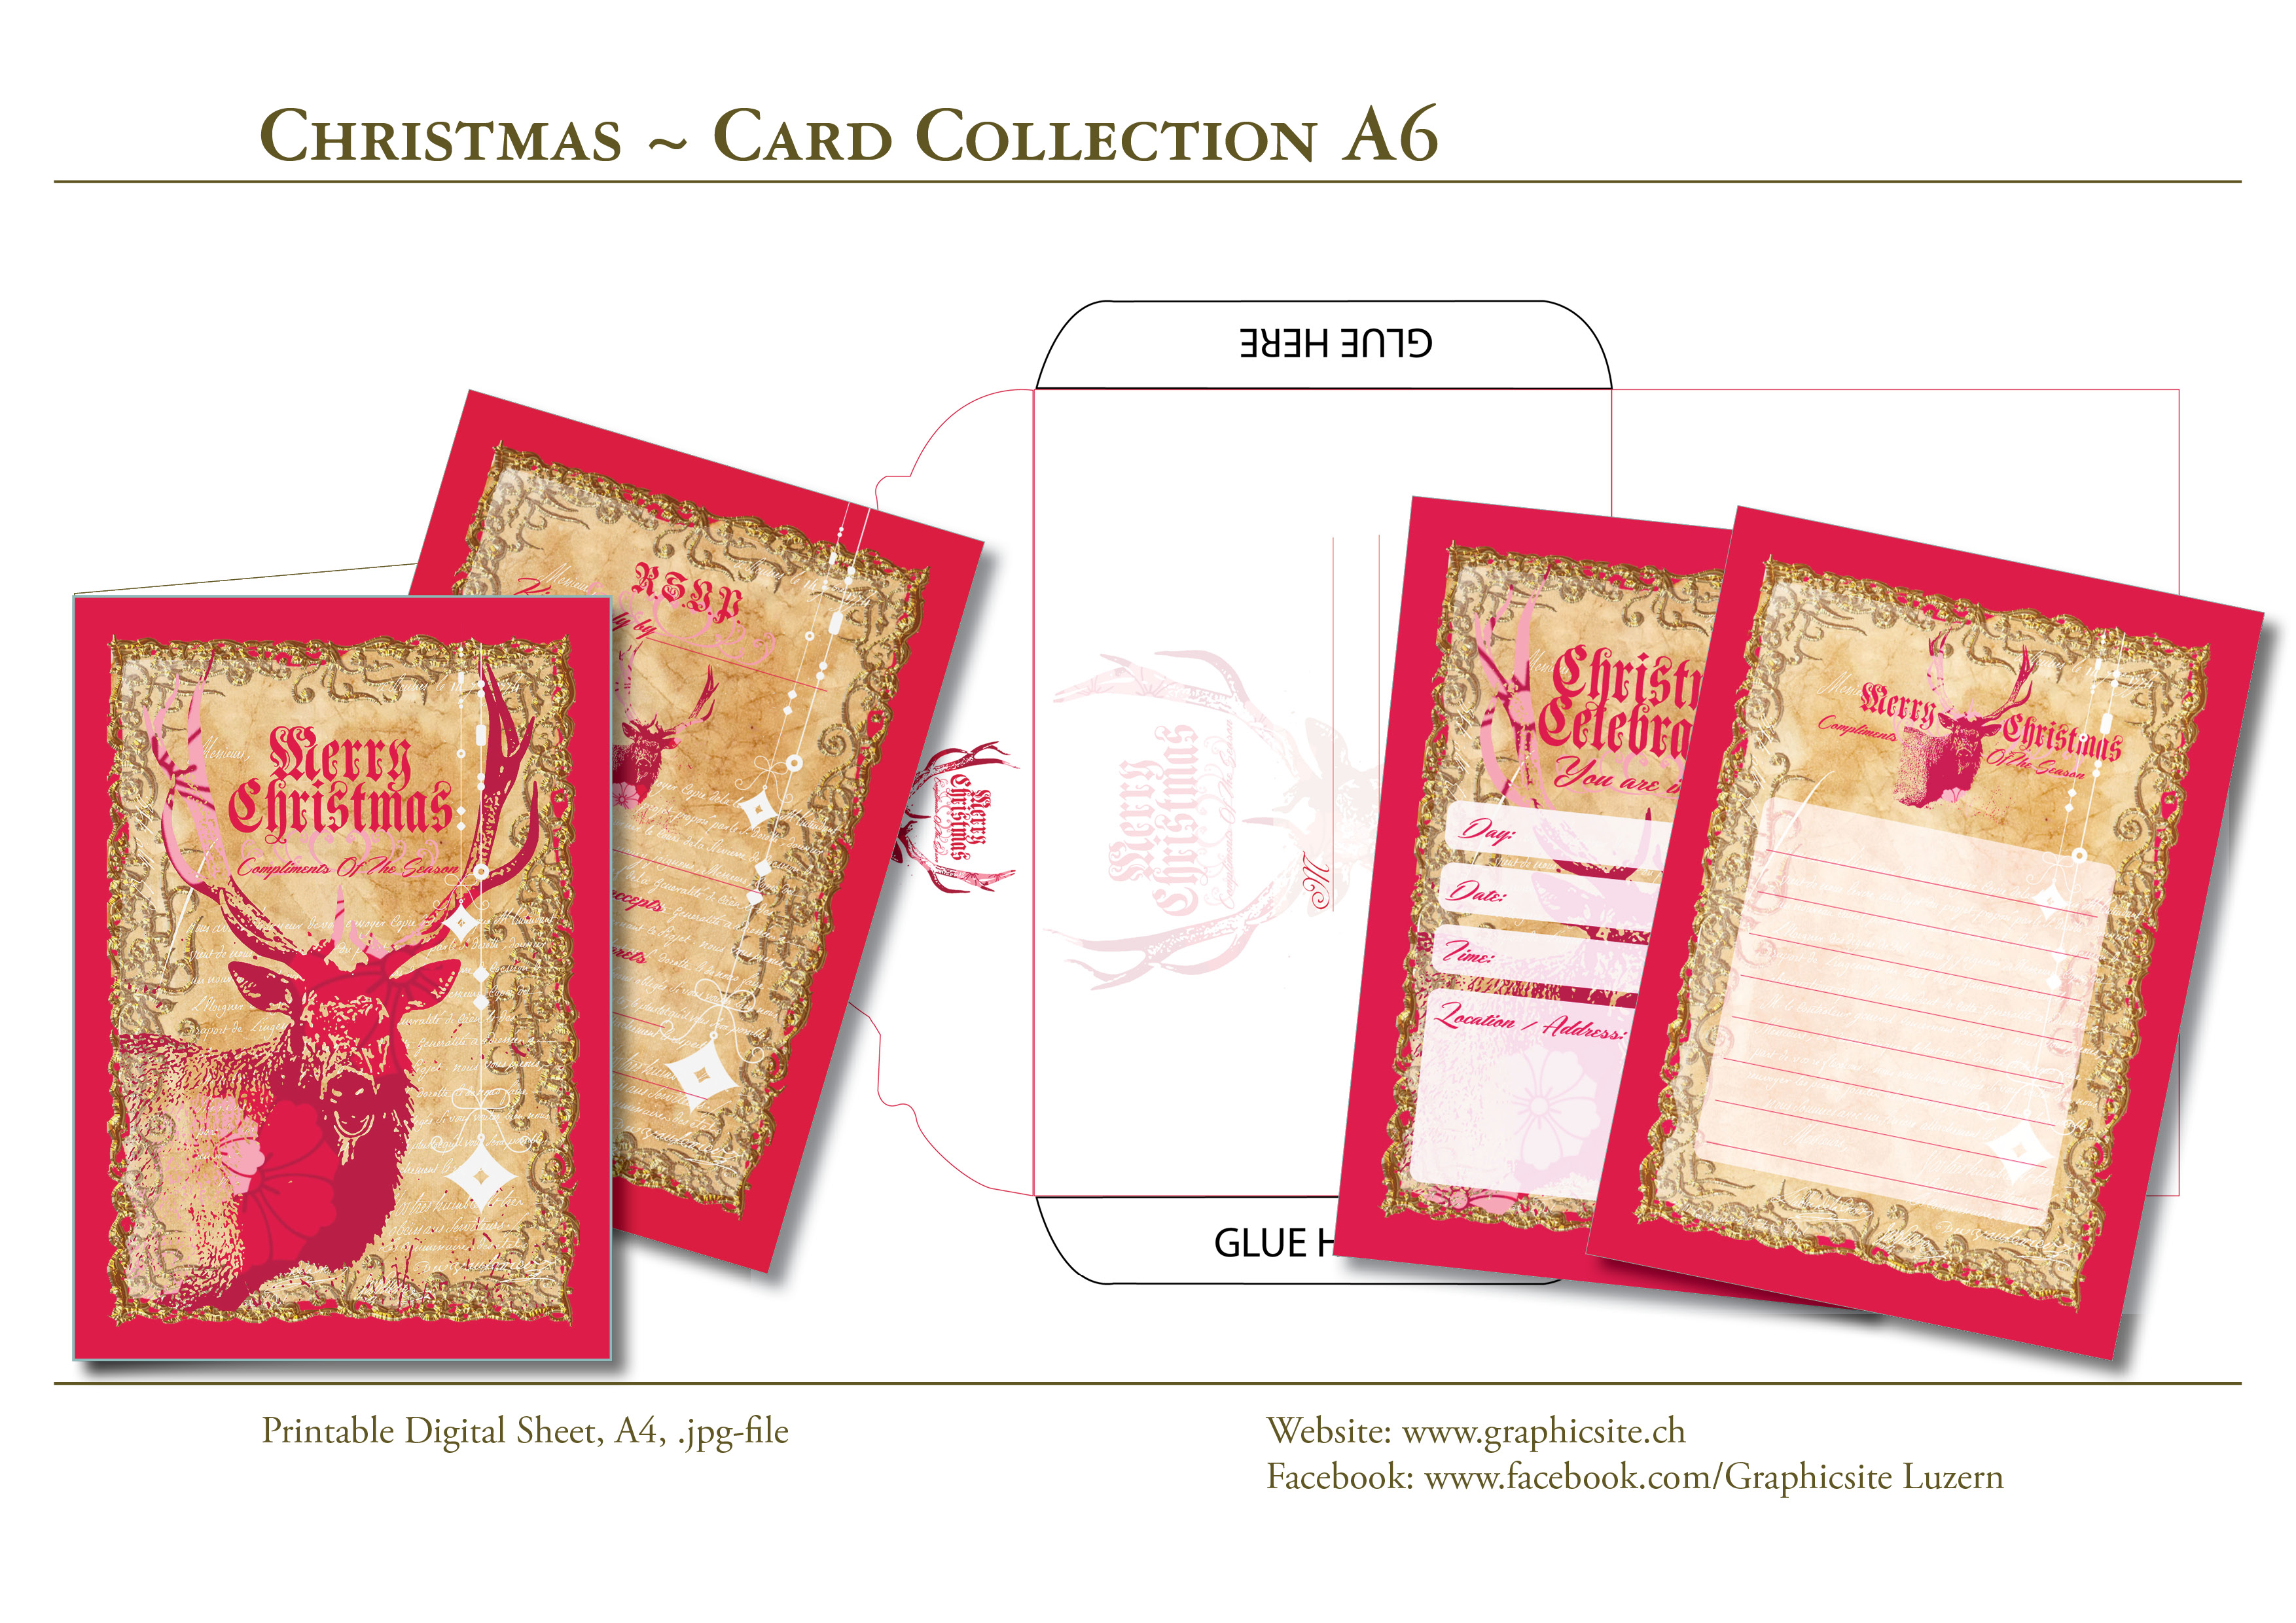 Karten selber drucken - Weihnachtskarten, Grusskarten, Elch / Karten / Kuvert - #weihnachtskarten, #karten, #selber, #drucken, #gestalten, #etiketten, #basteln, #luzern, #schweiz